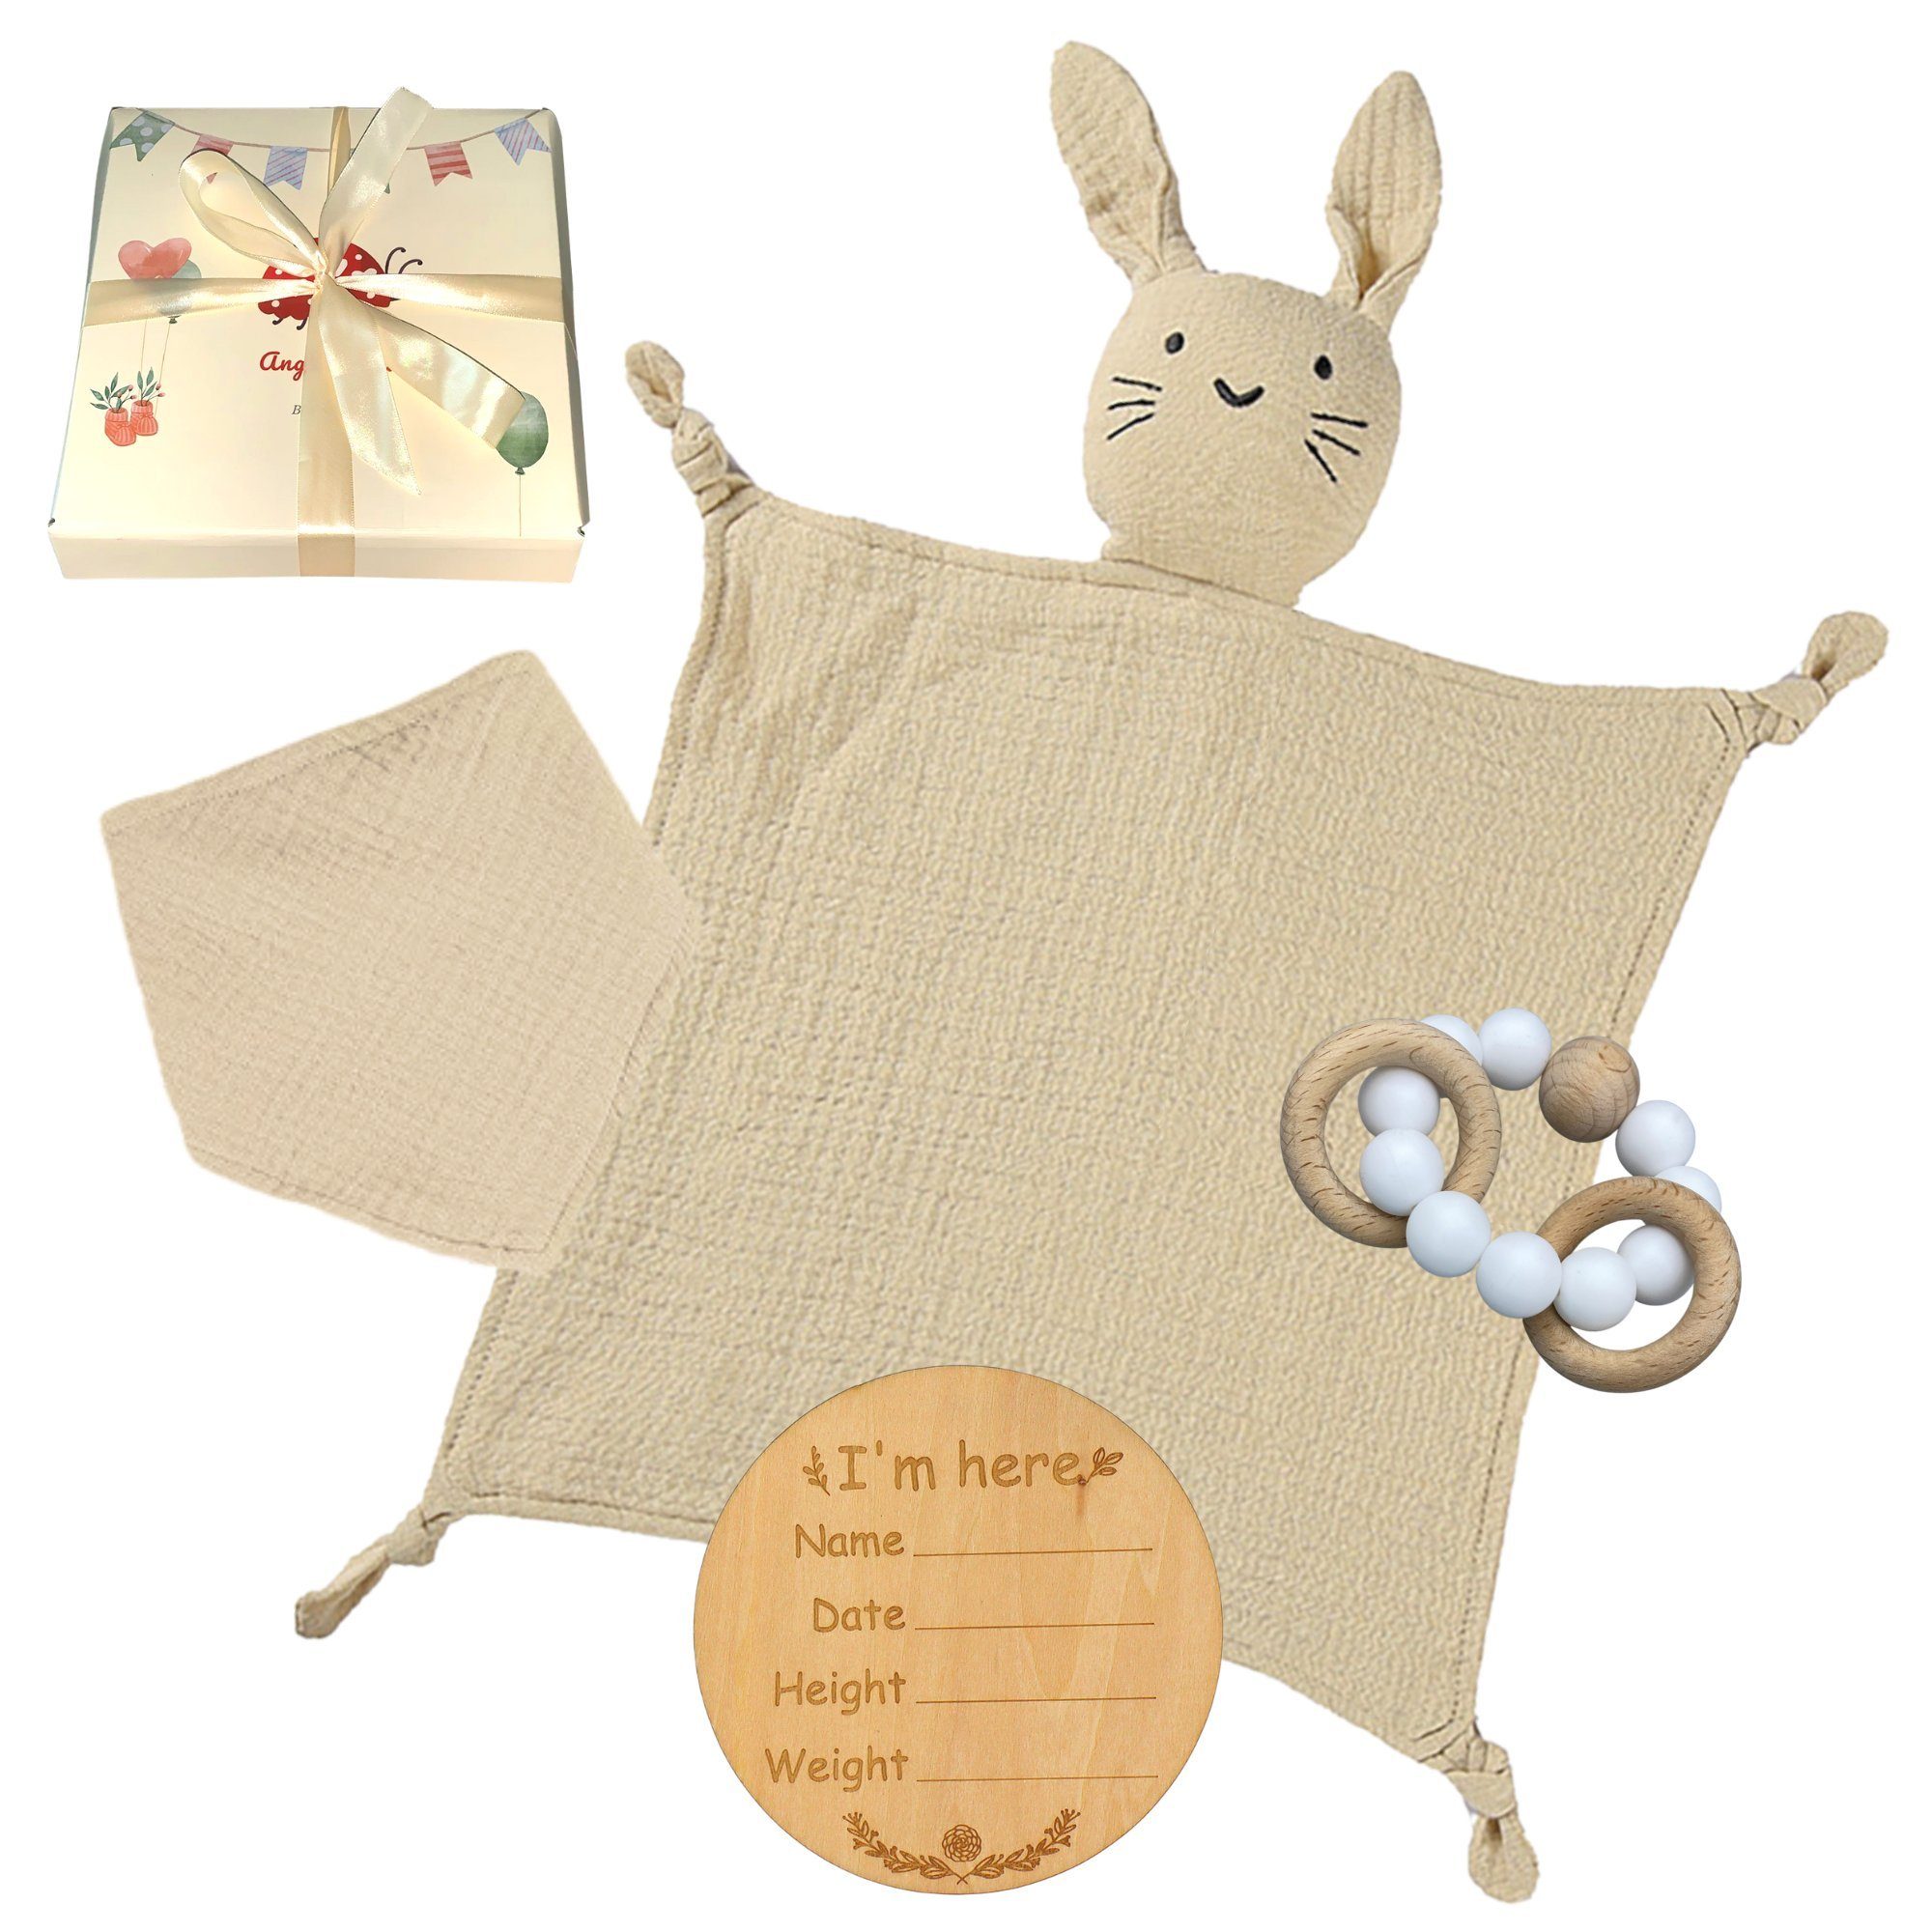 Angel's Baby Neugeborenen-Geschenkset Geschenk zur Geburt mit Schnuffeltuch, Beißring (Set, mit Geschenkverpackung + Grußkarte) 4 Teile + gratis Grußkarte, Geschenkbox Beige